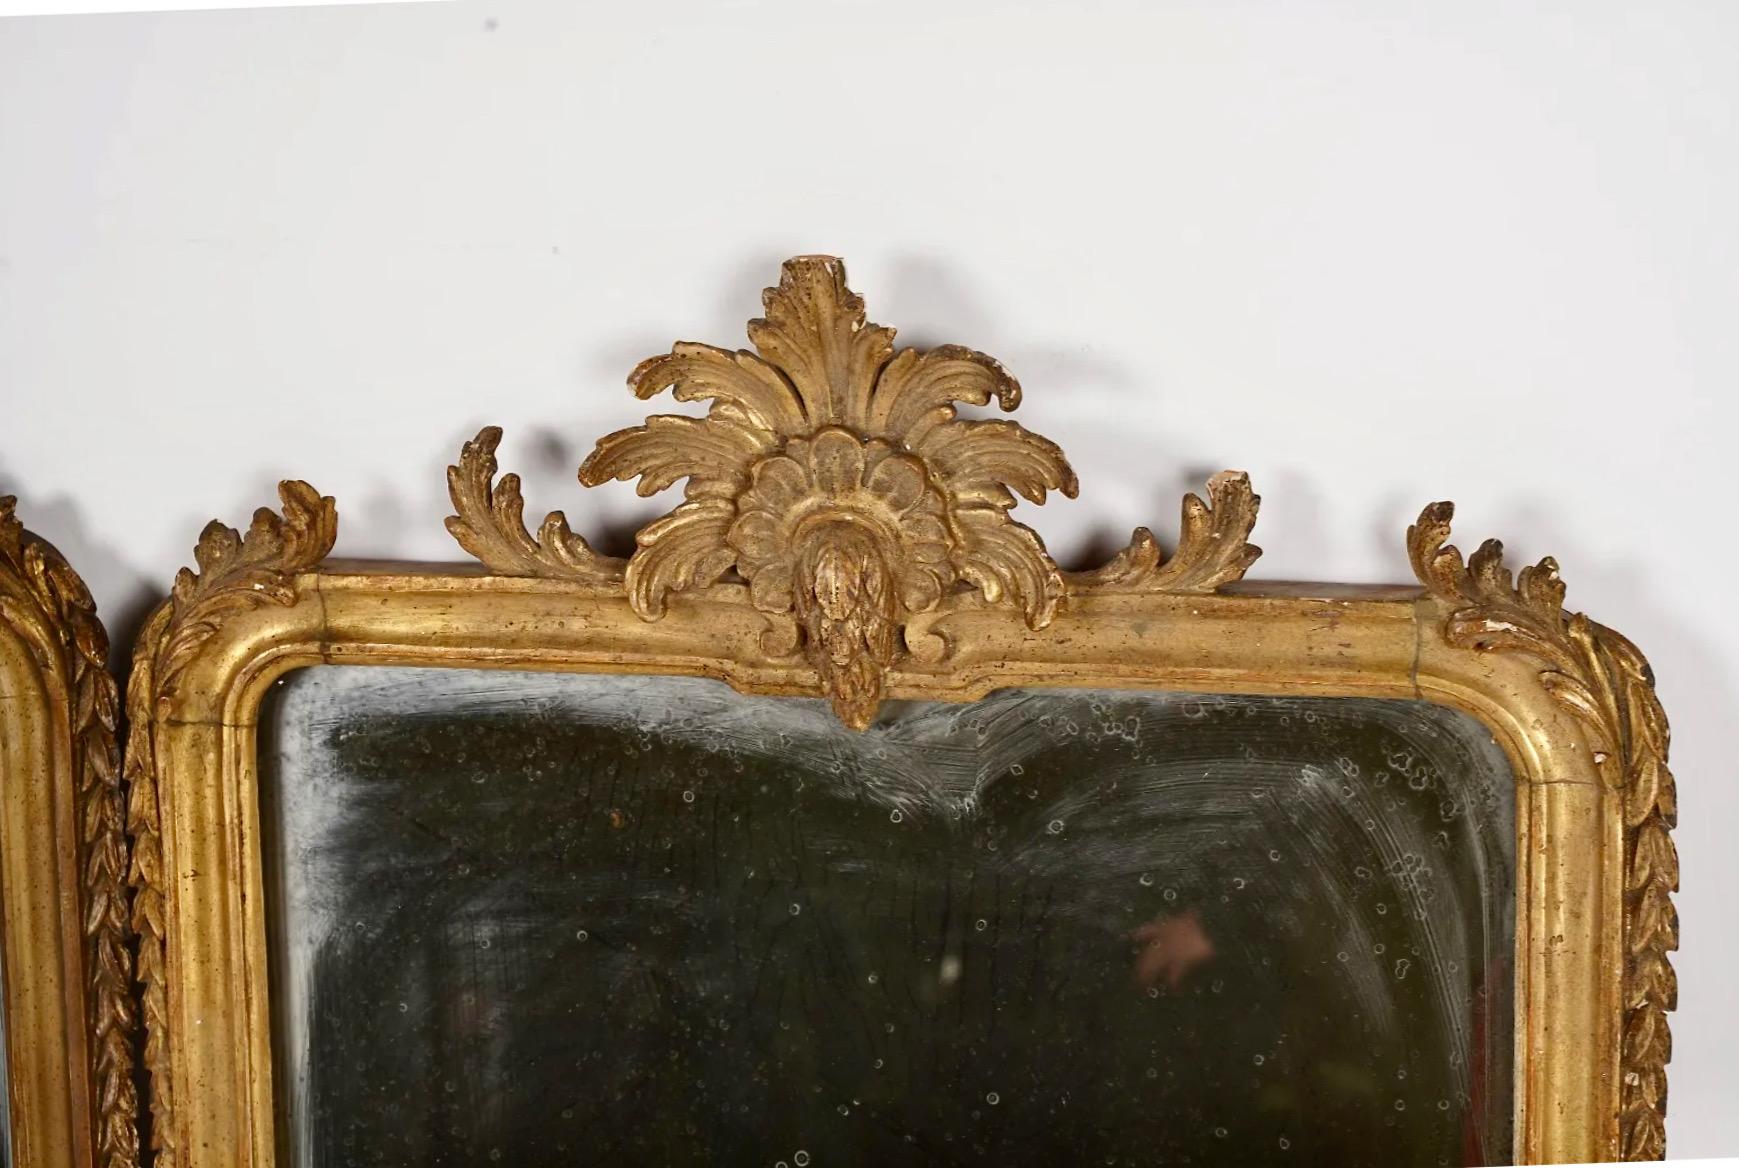 Il s'agit d'une paire très inhabituelle de girandoles baroques italiennes de la fin du XVIIe ou du début du XVIIIe siècle. Les girandoles présentent un cadre en bois sculpté et doré finement exécuté, surmonté d'un cimier de feuilles d'acanthe